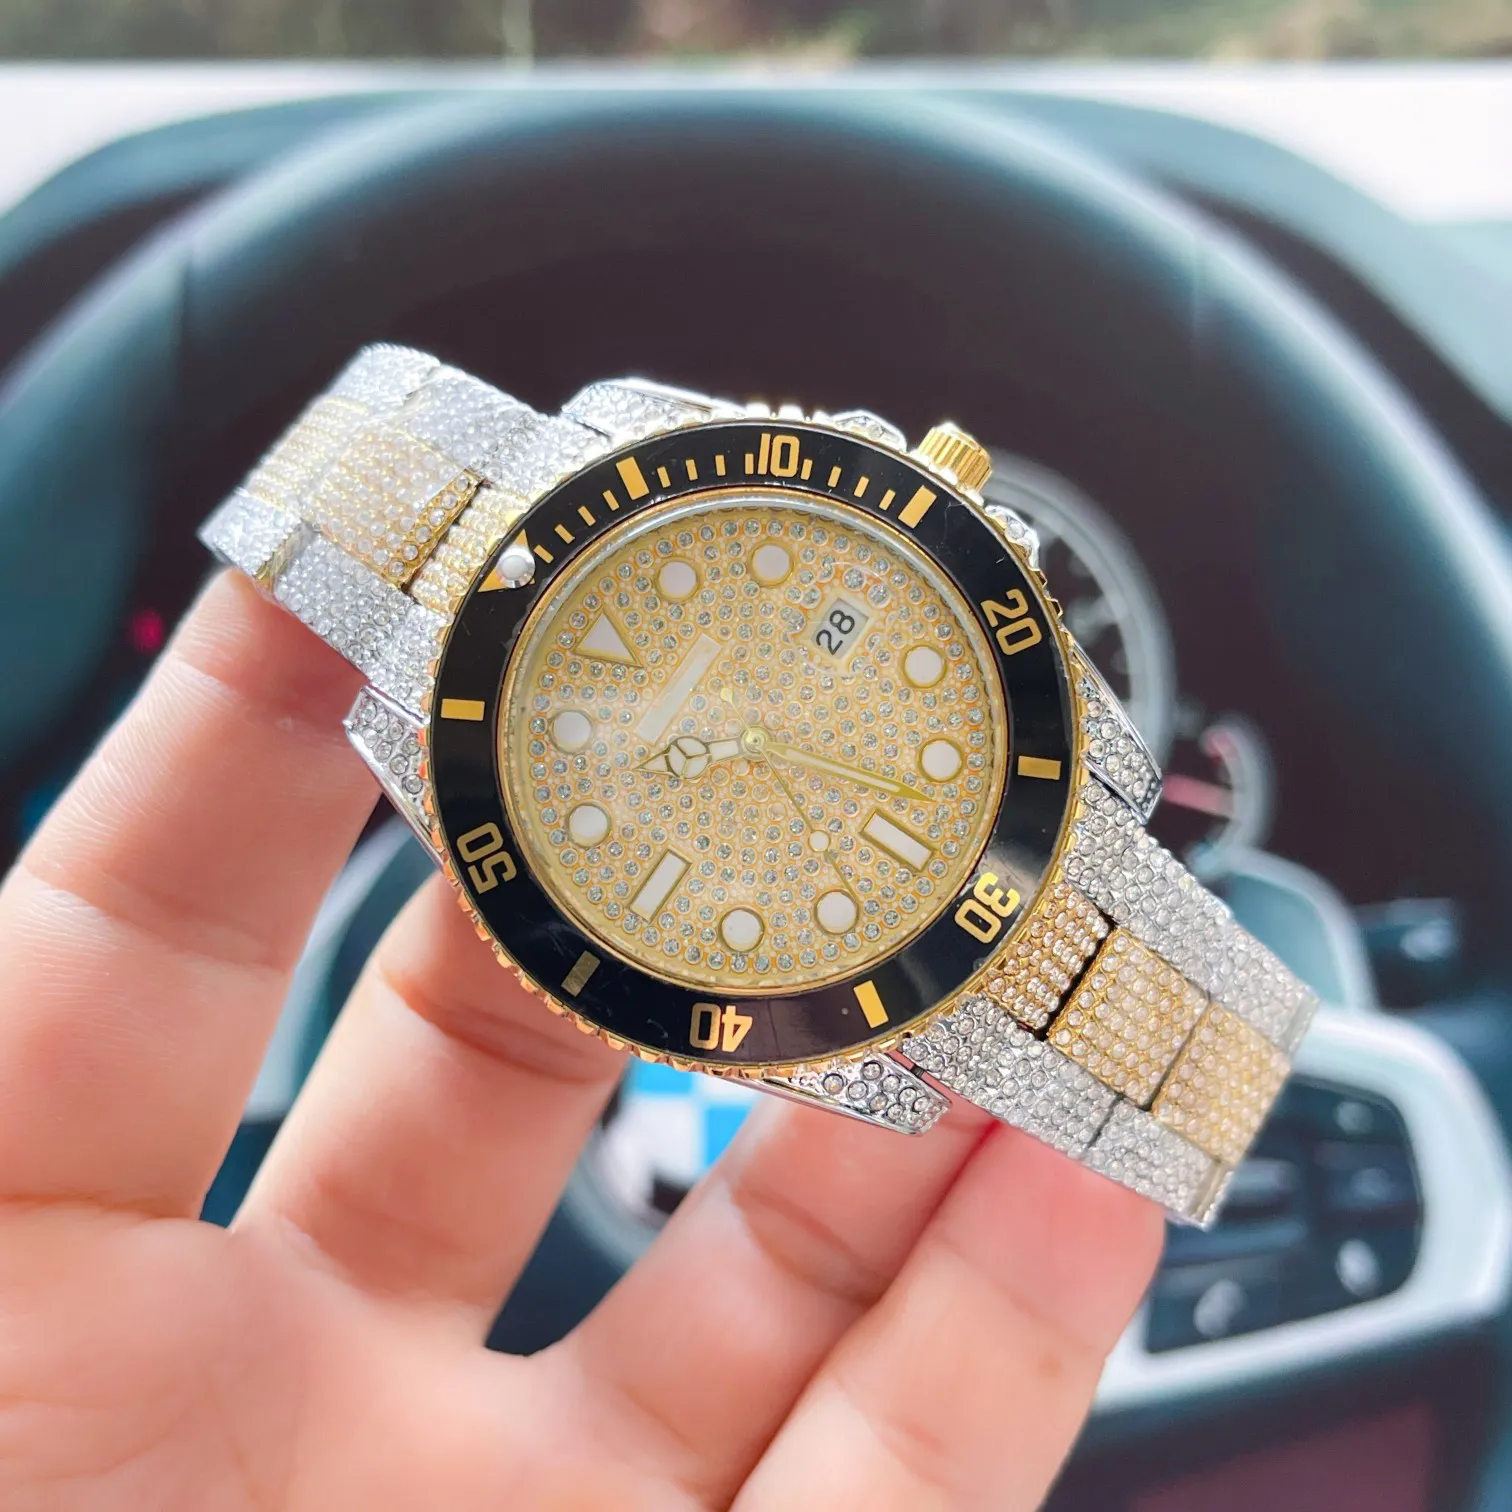 Relógio de luxo moda masculina e feminina relógios céu estrelado relógios pulseira de couro genuíno pulseira de aço multifuncional com caixa muito agradável